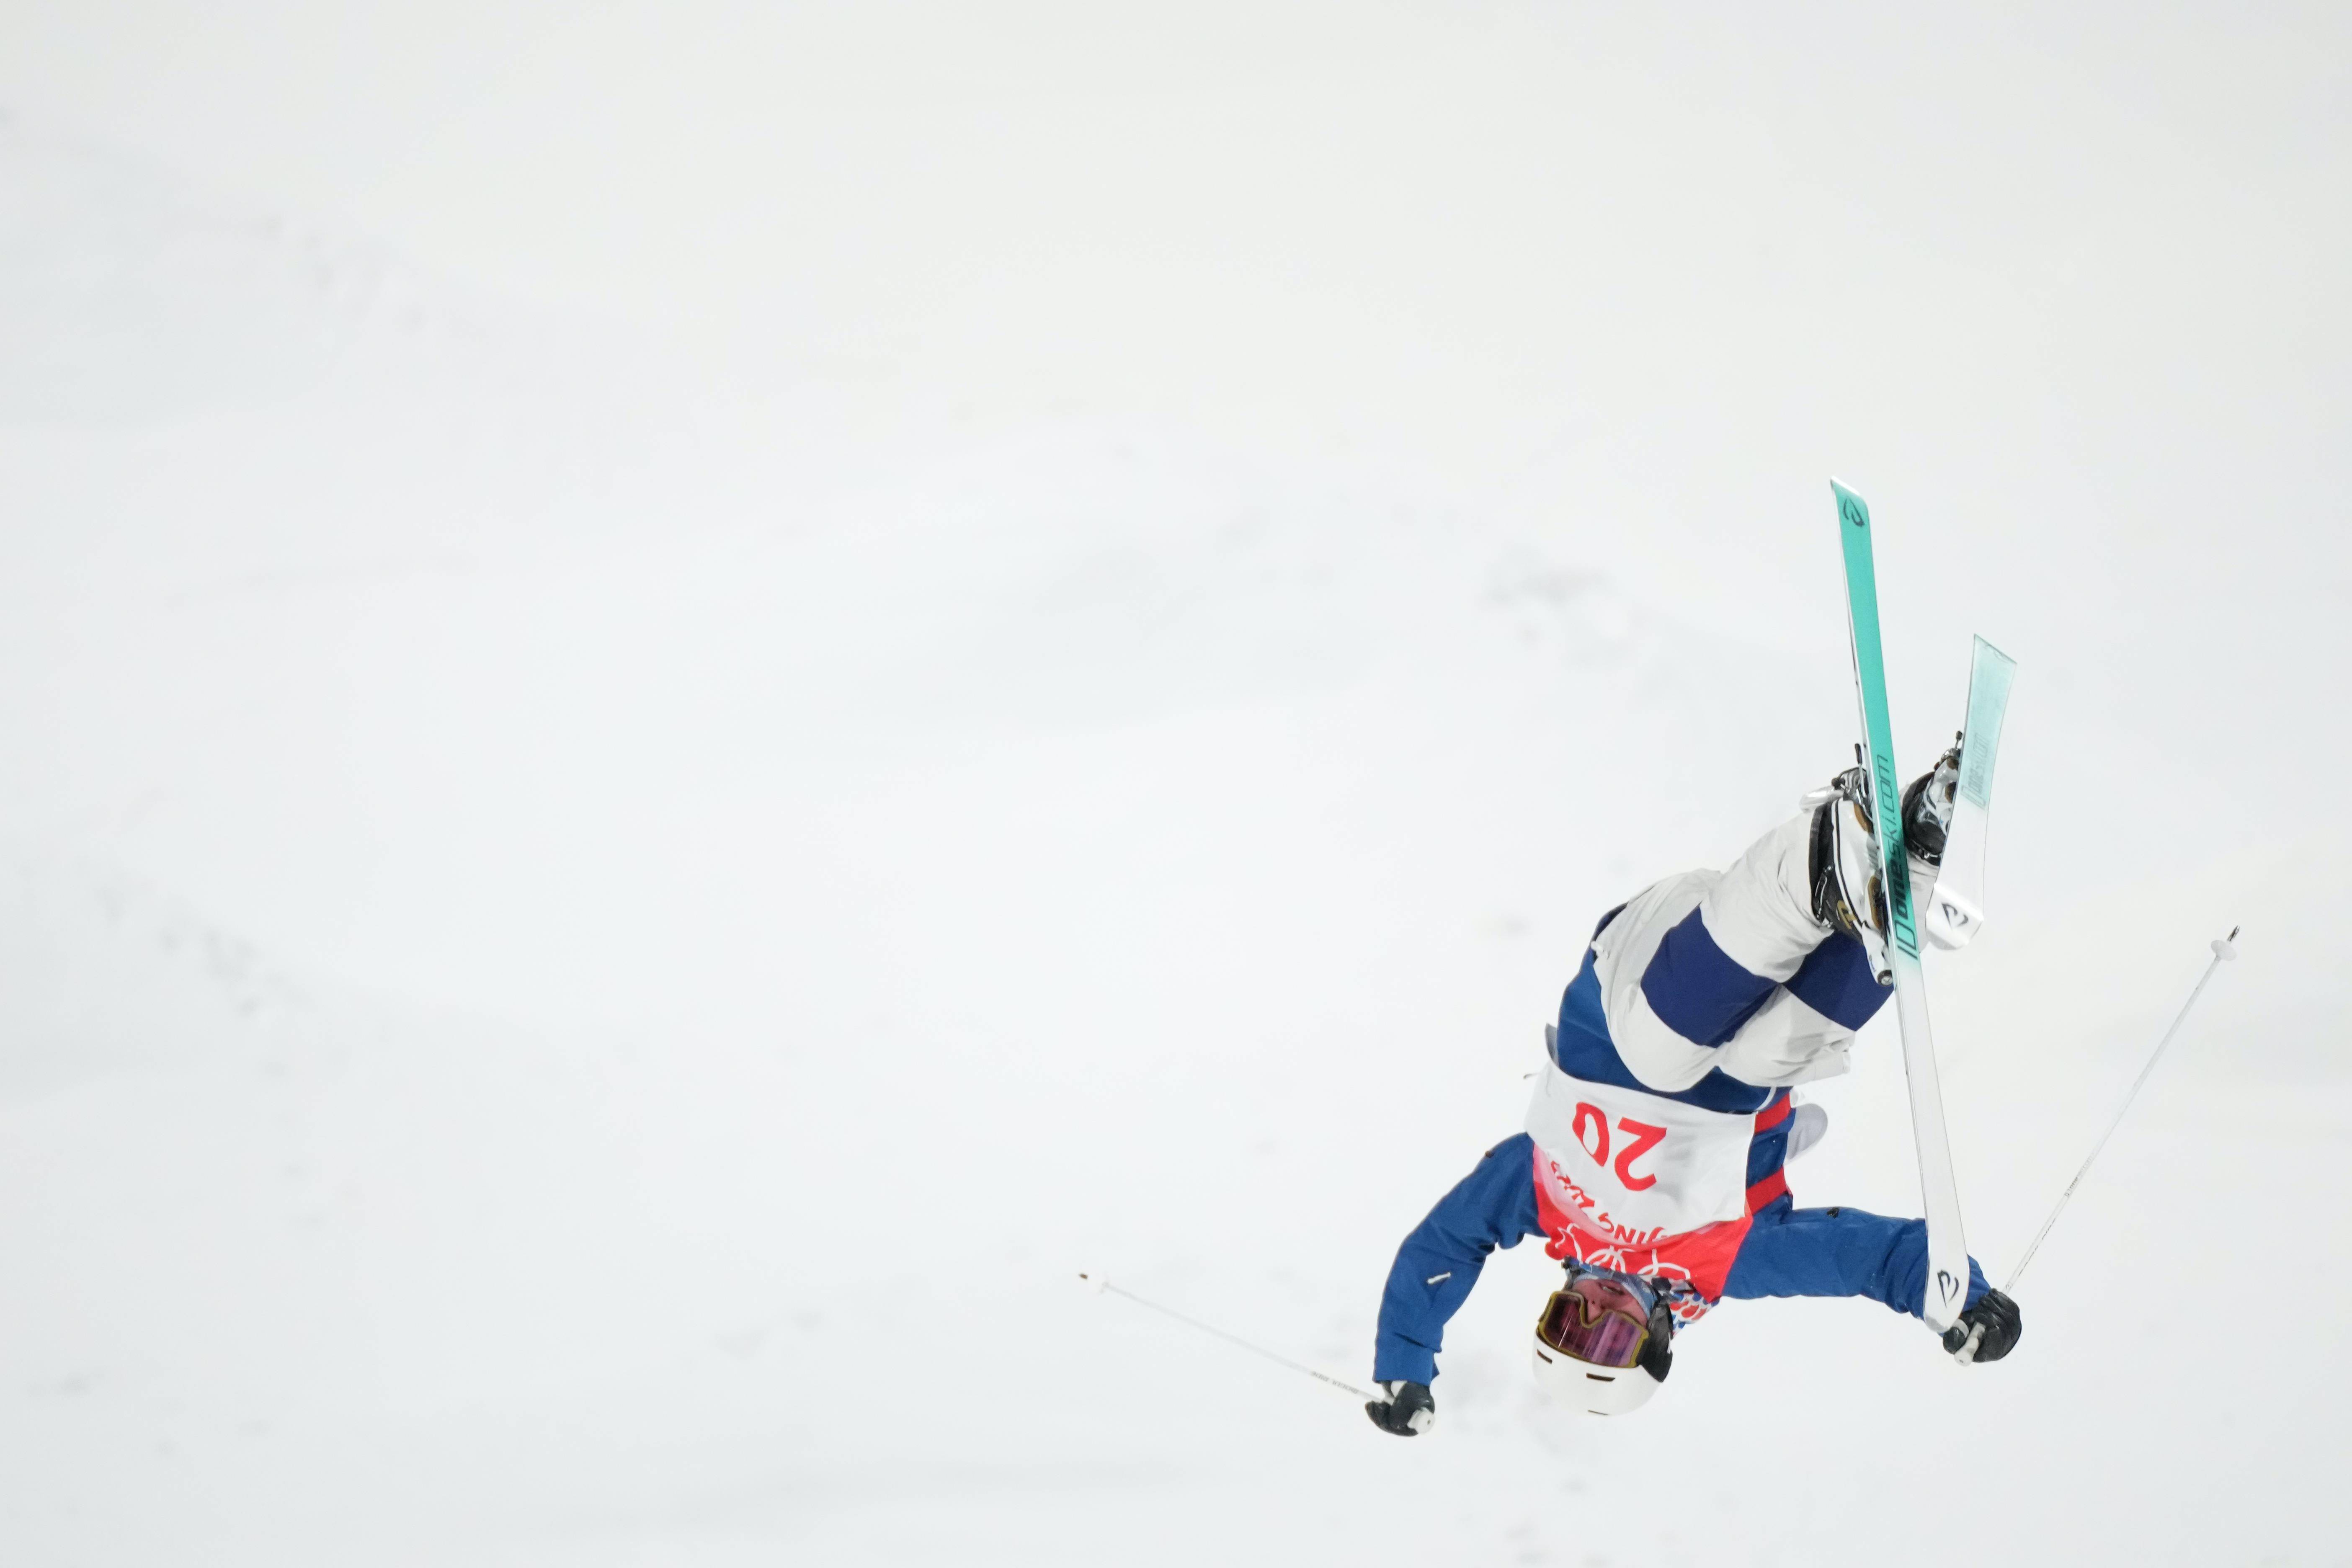 参加北京冬奥会自由式滑雪雪上技巧项目的运动员在崇礼云顶滑雪公园